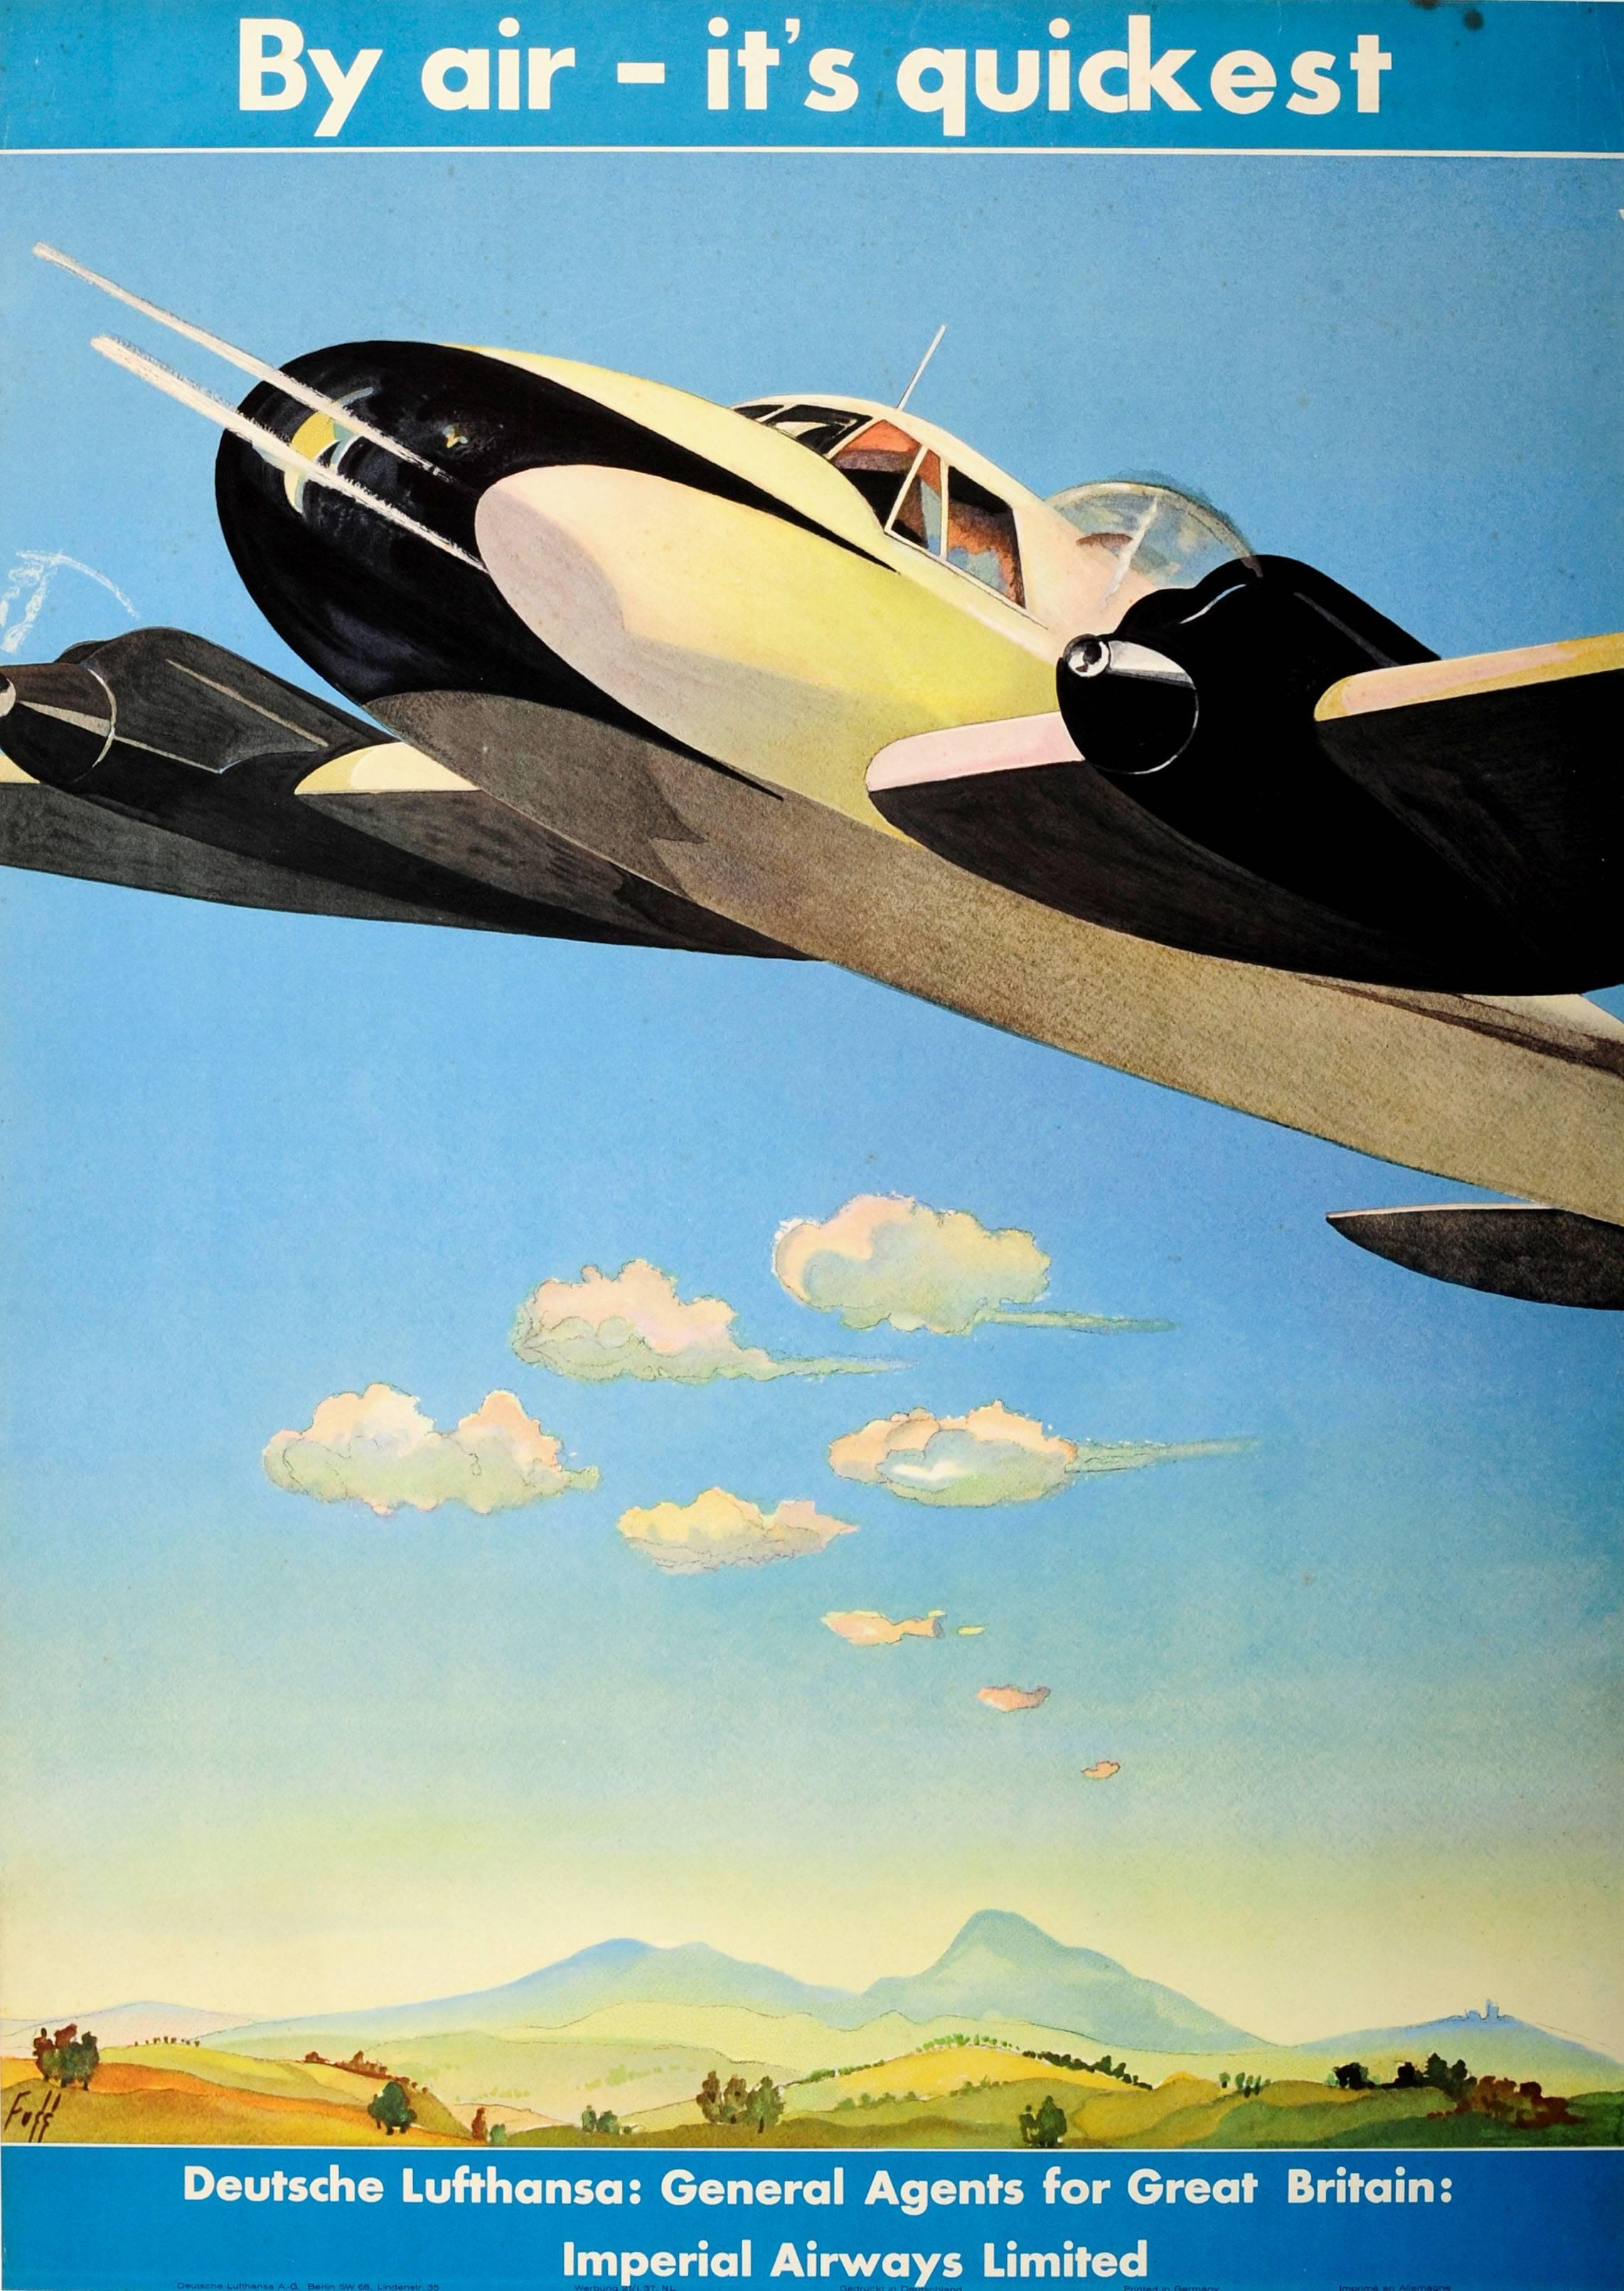 Albert Fuss Print - Original Deutsche Lufthansa Travel Advertising Poster By Air - It's Quickest